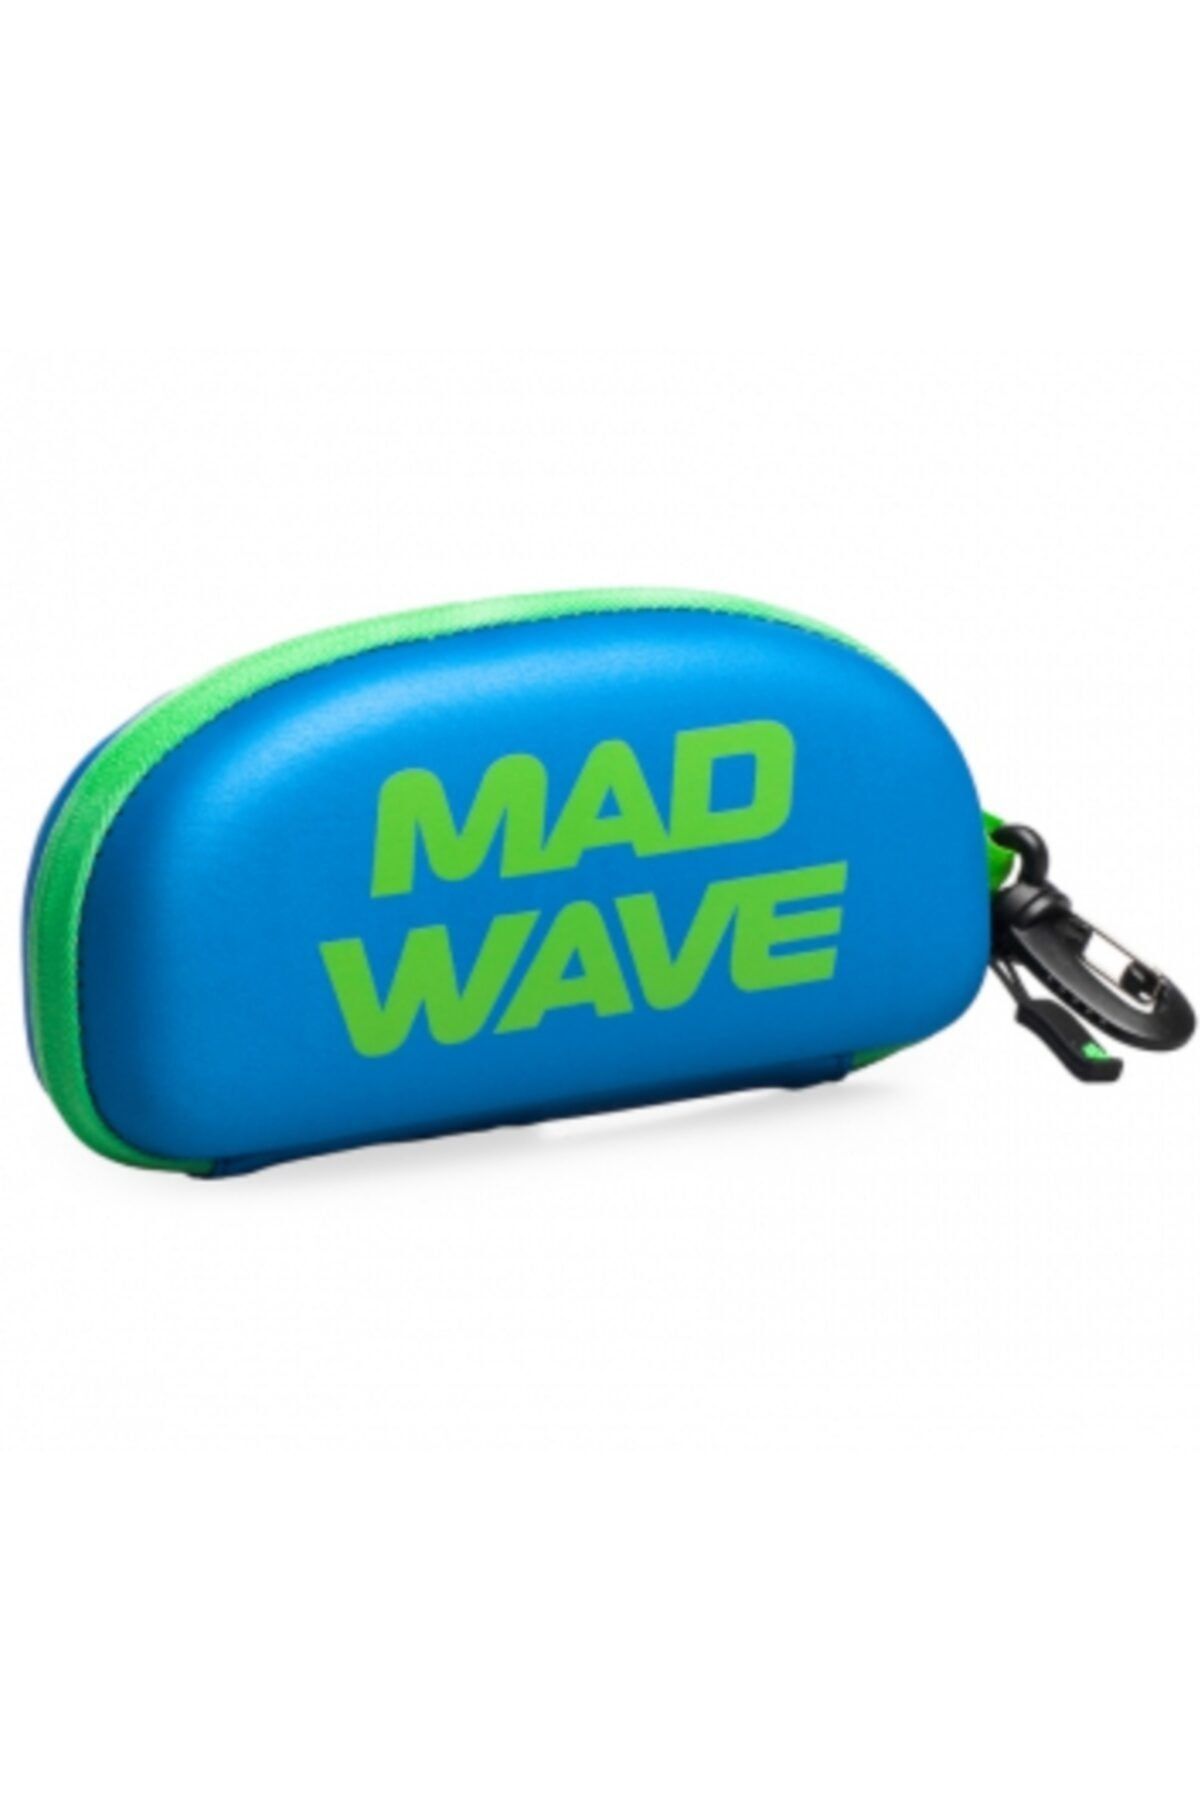 Mad Wave Madwave Közlük Kılıfı, Gözlük Kabı, Mavi/yeşil